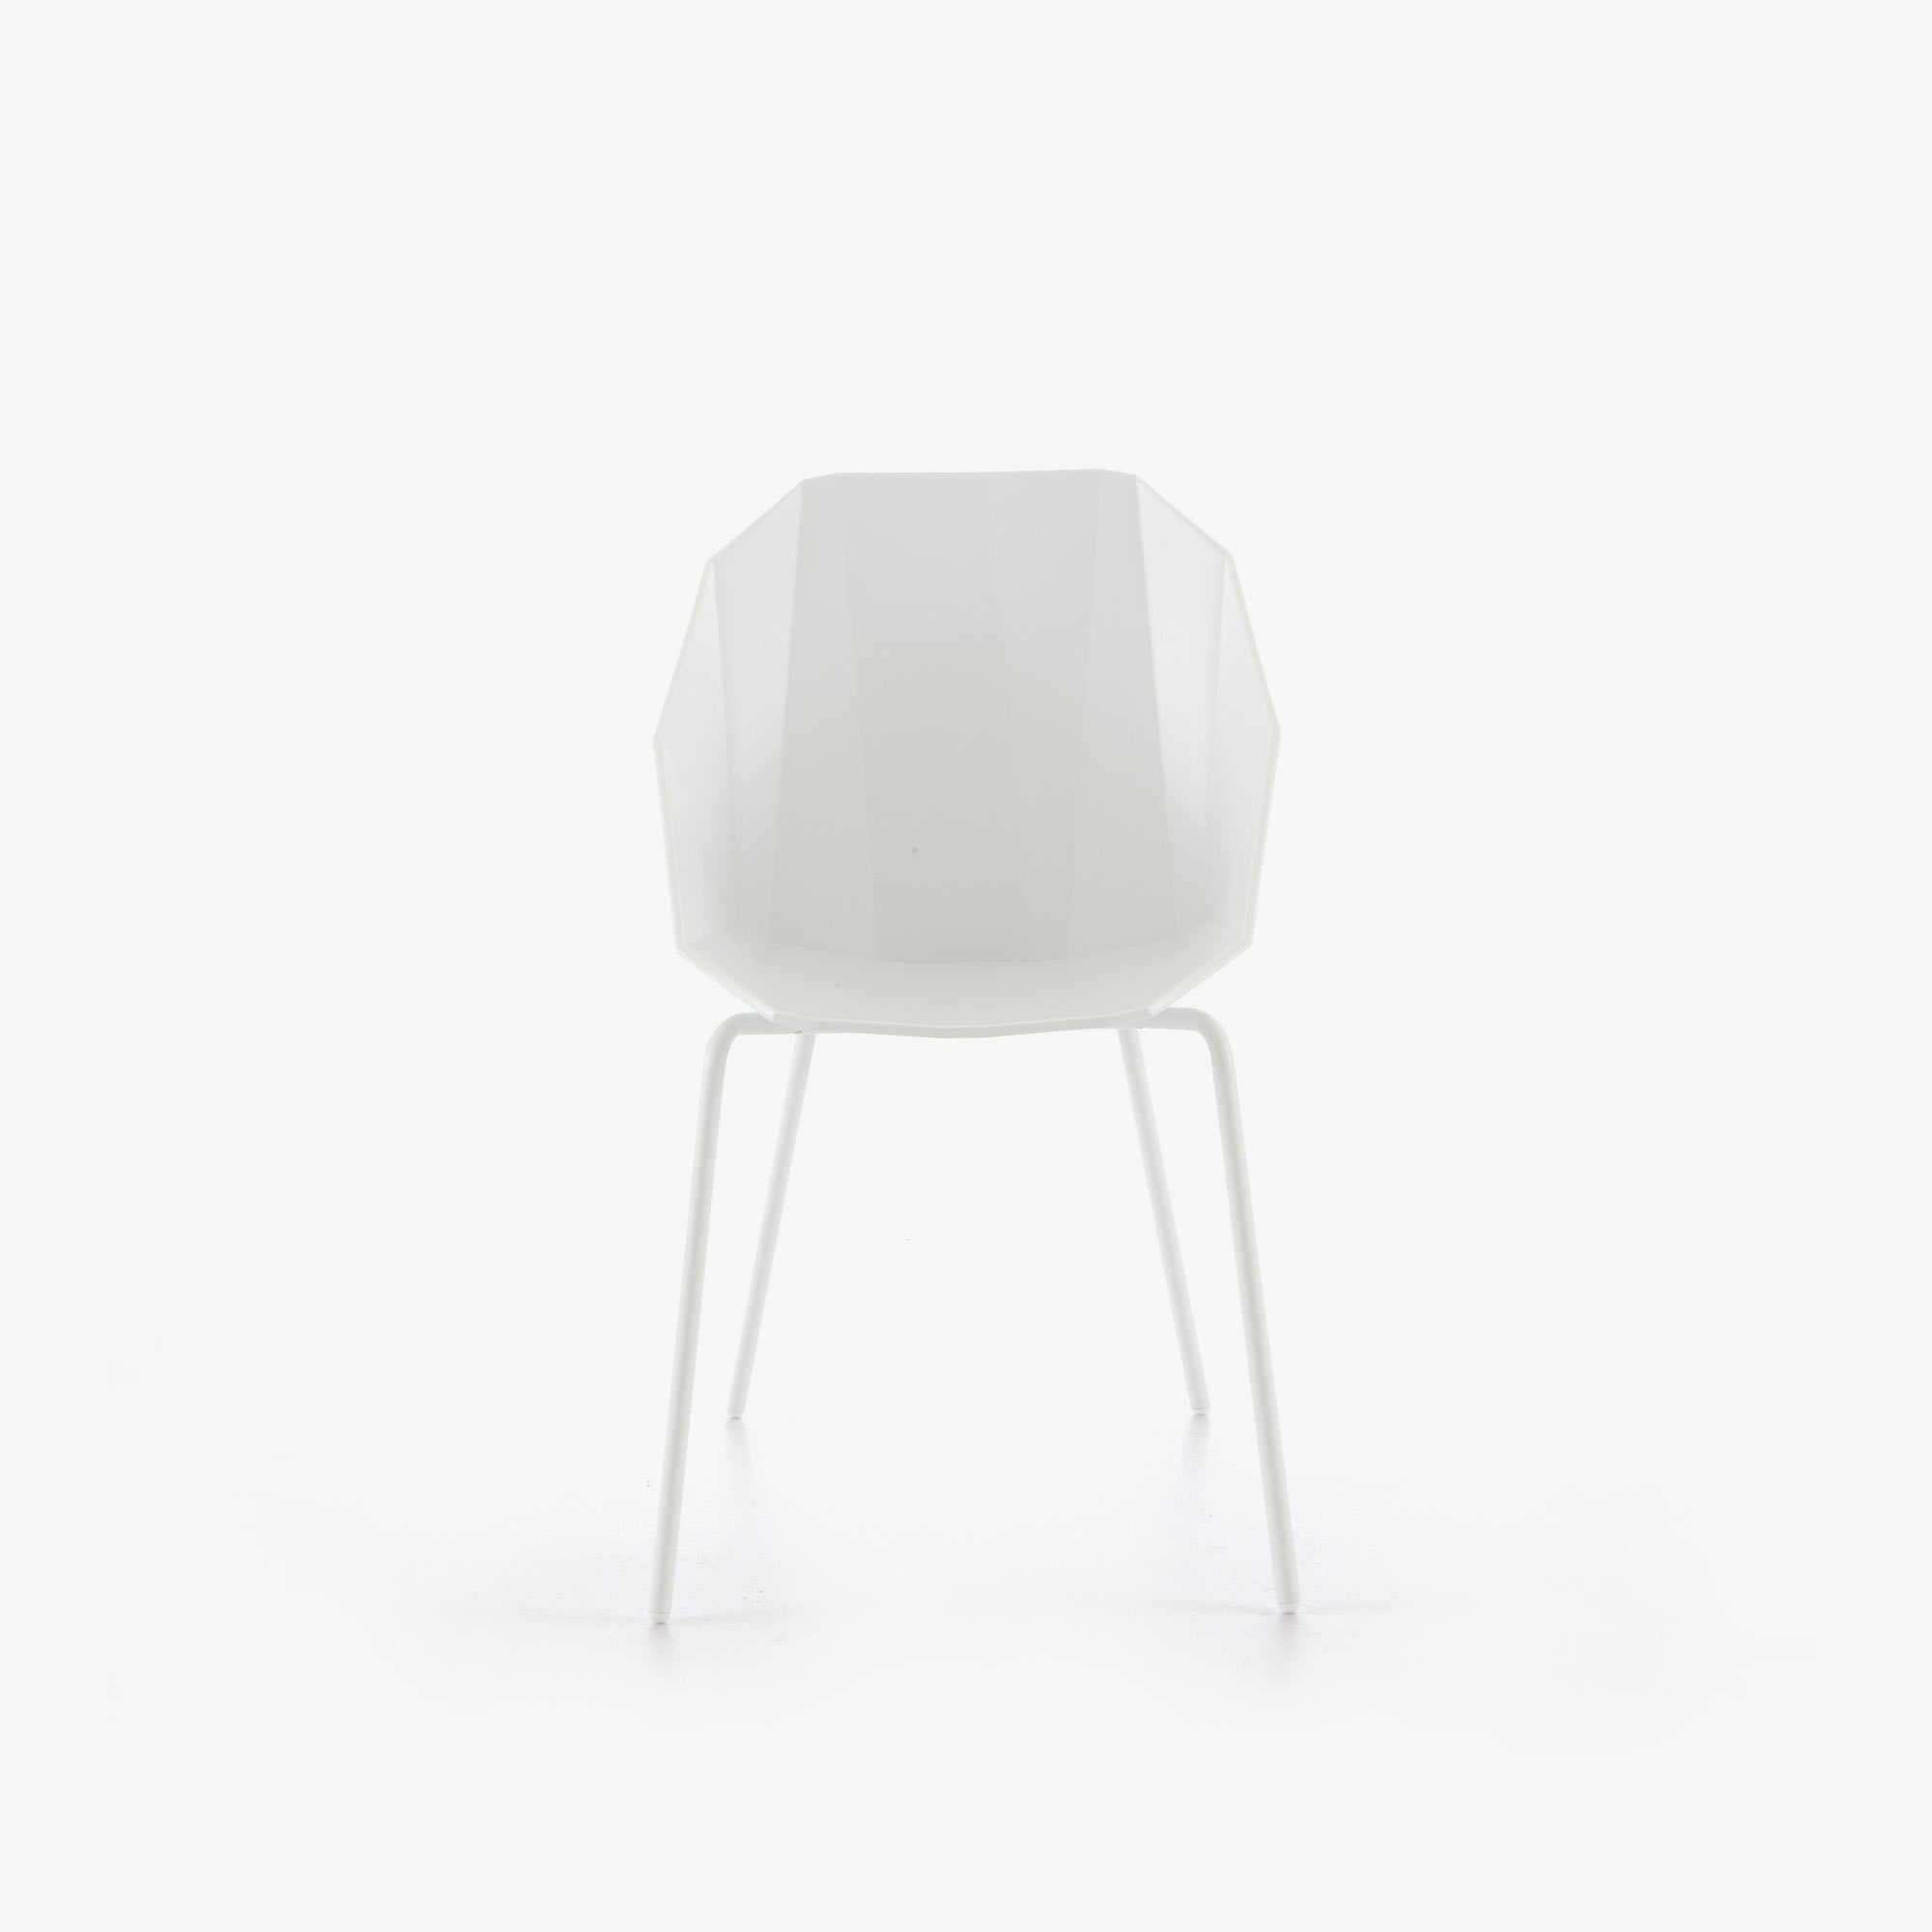 Image 椅子/桥形结构 白色 白色水性漆底座 1